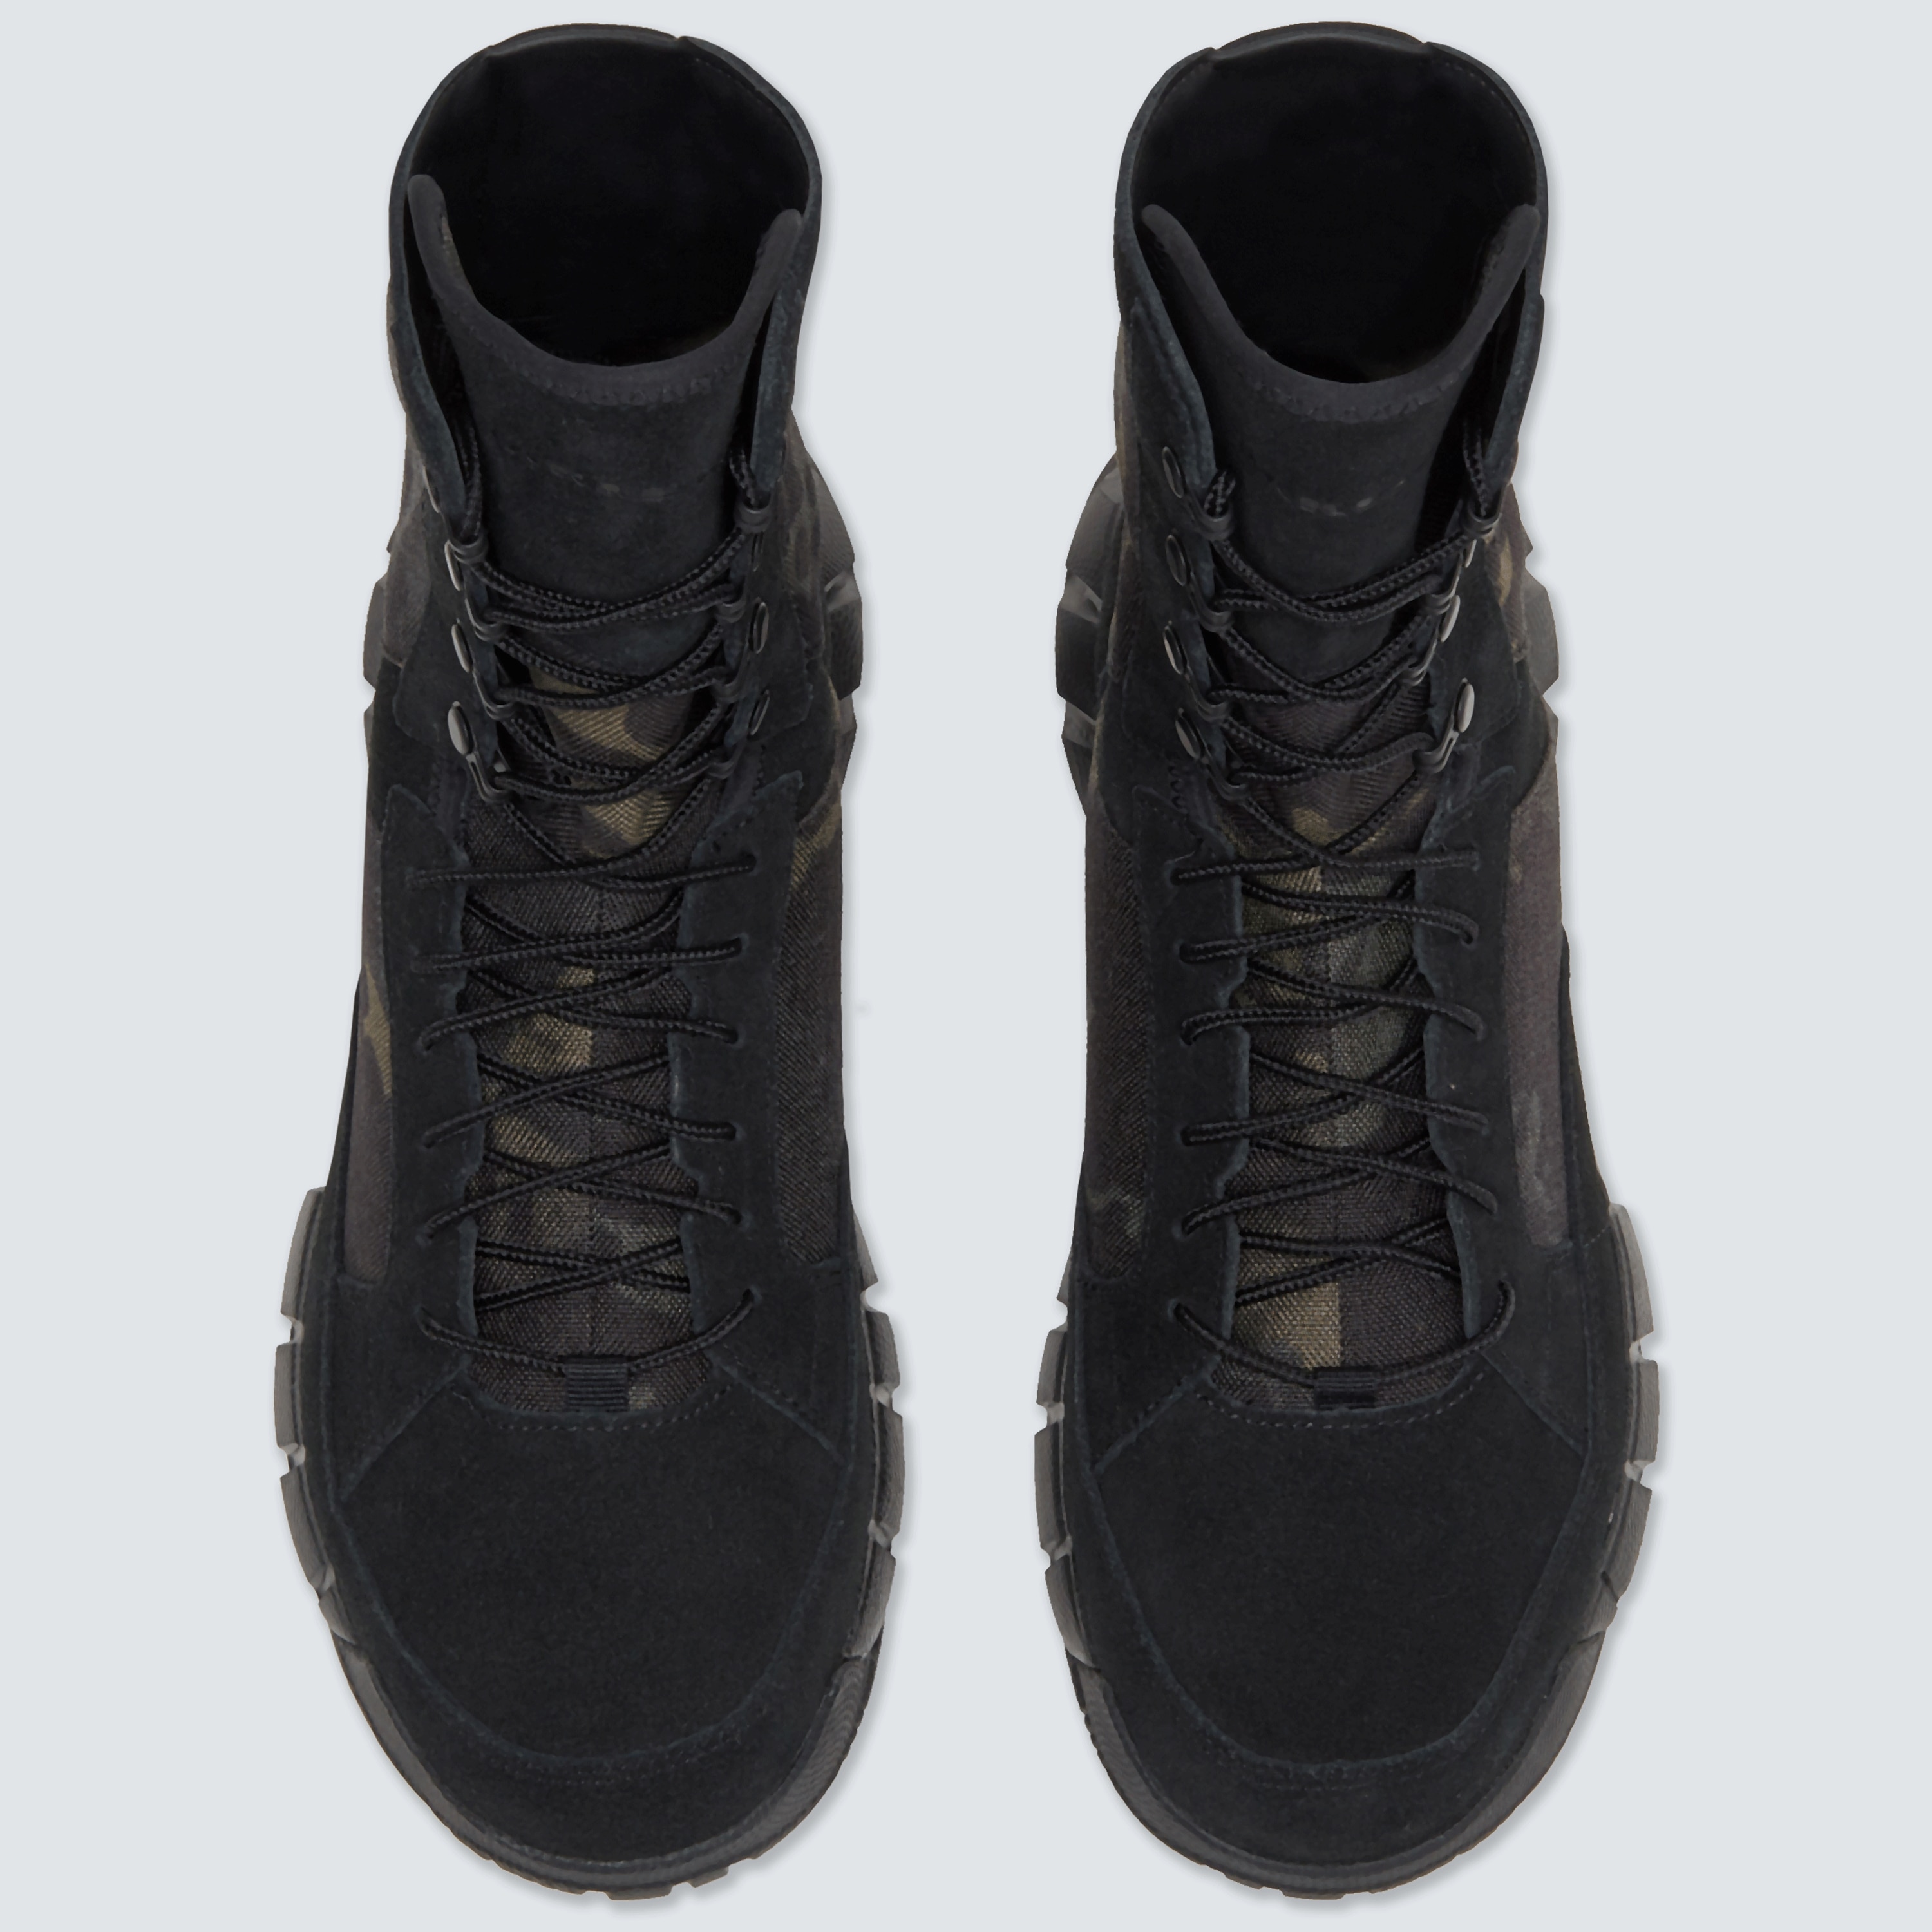 oakley light assault boot leather